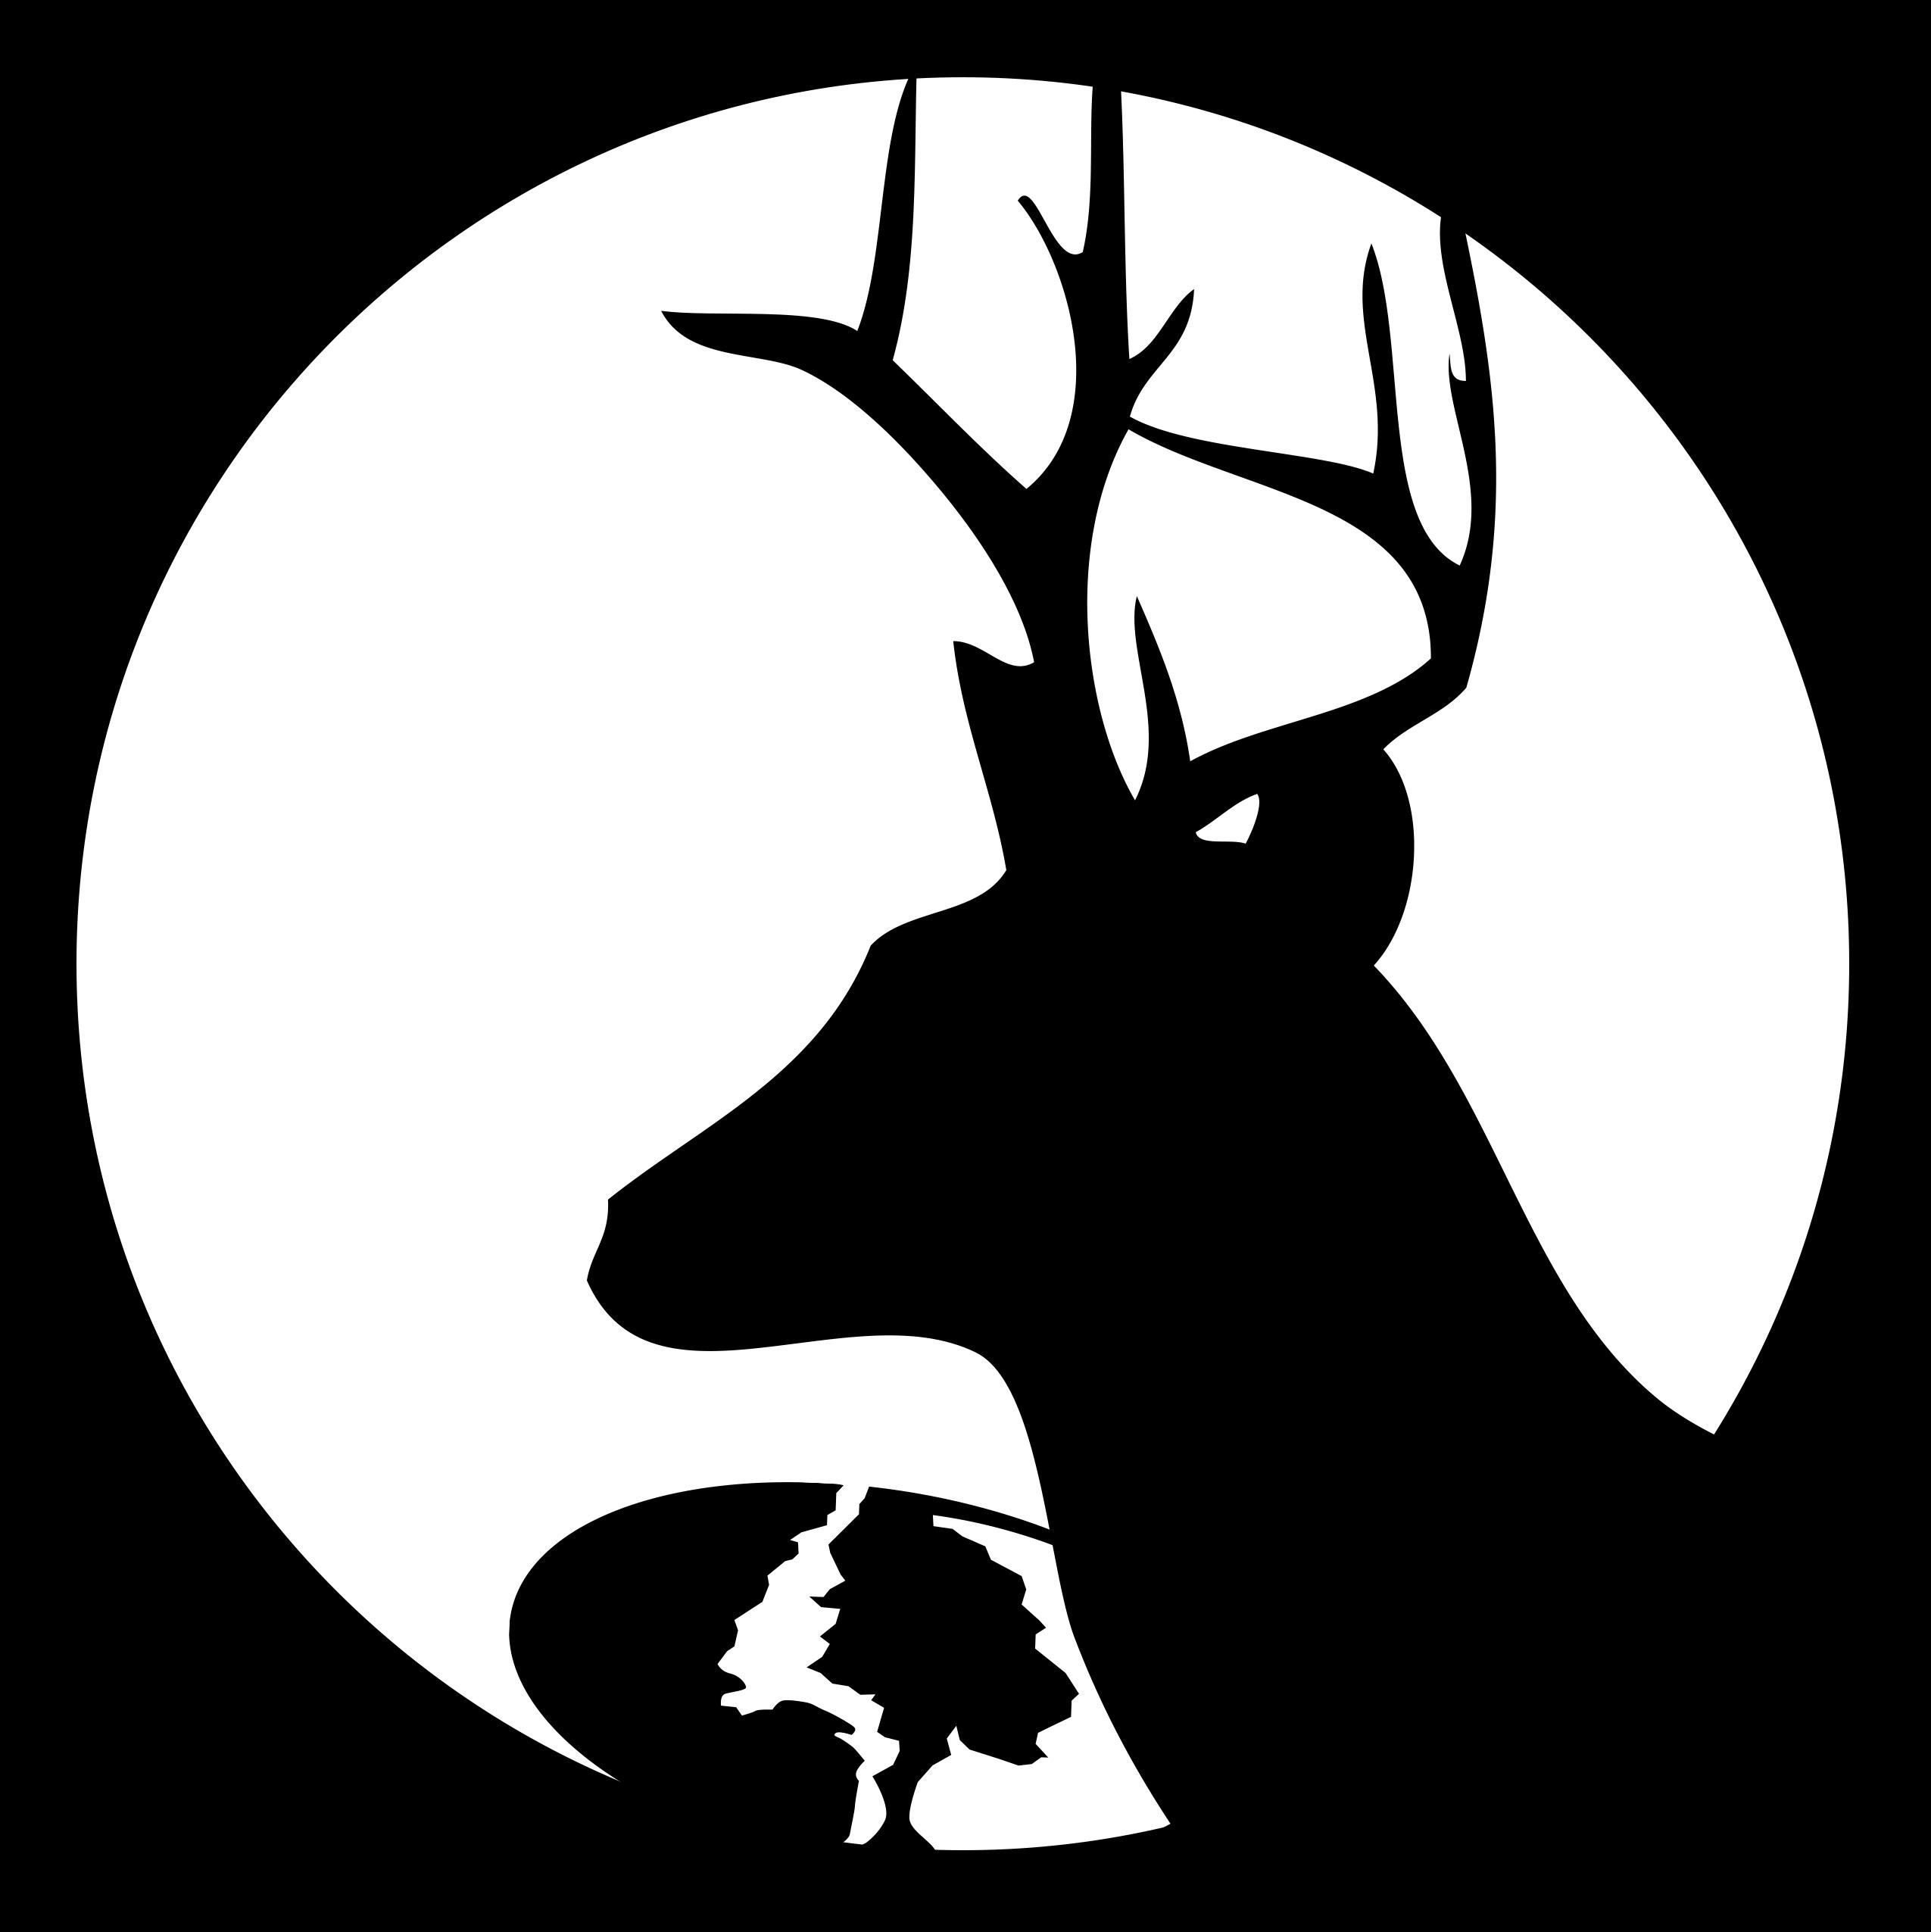 Deer Stencil Printable